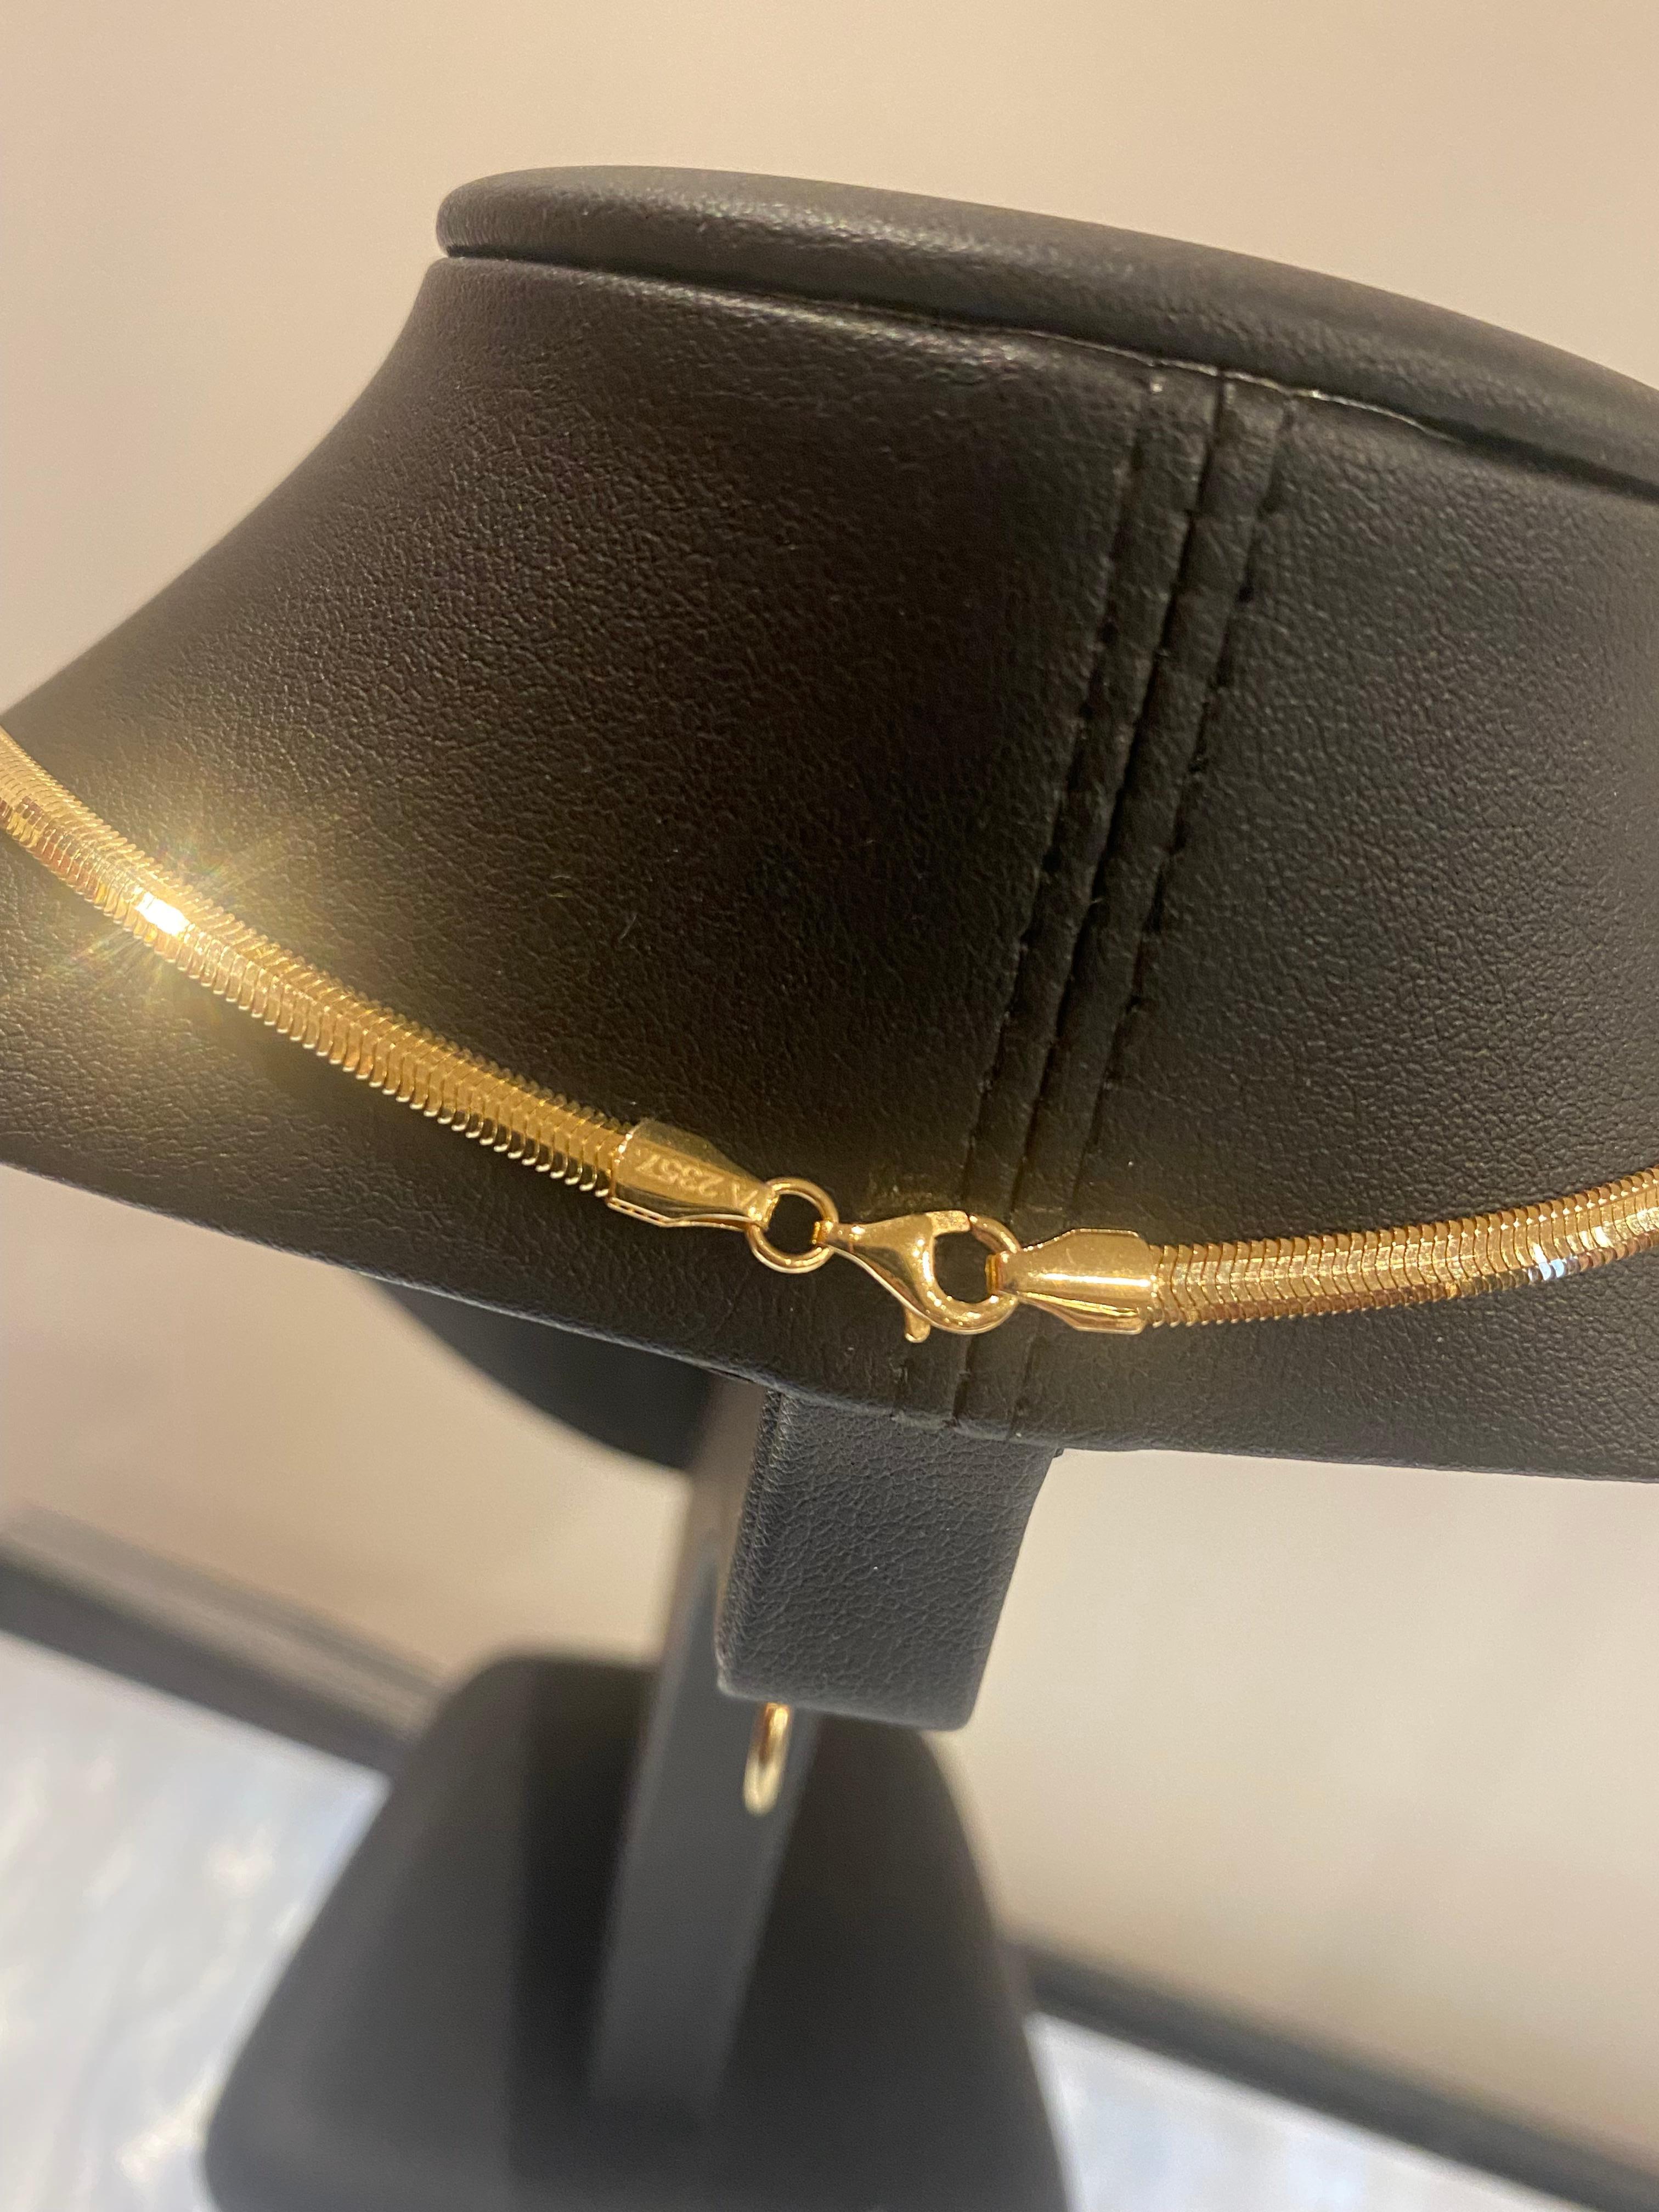 Diese prächtige 18K Gold Herringbone/Snake Link Halskette
verleiht Ihrem Look einen Hauch von Luxus und Raffinesse

~~

Dieses in Italien gefertigte Schmuckstück stammt aus den 1980er Jahren. 
verfügt über ein wunderschönes und begehrtes